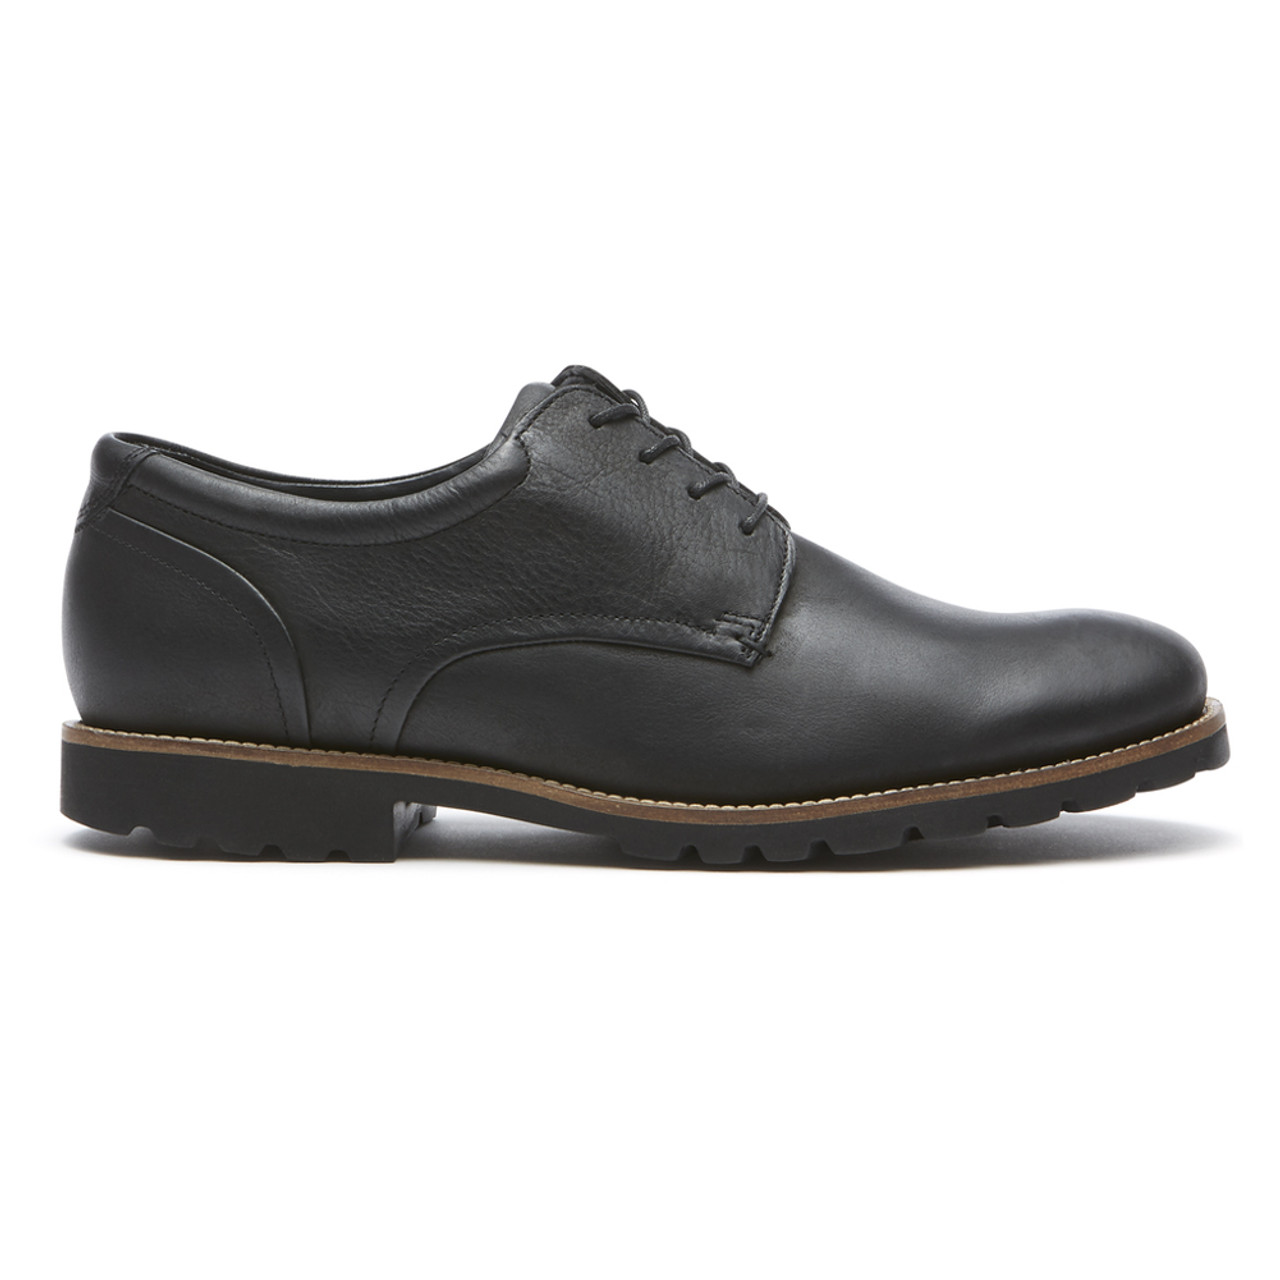 Rockport Men's Colben Oxford - Black | Discount Rockport Men's Shoes ...